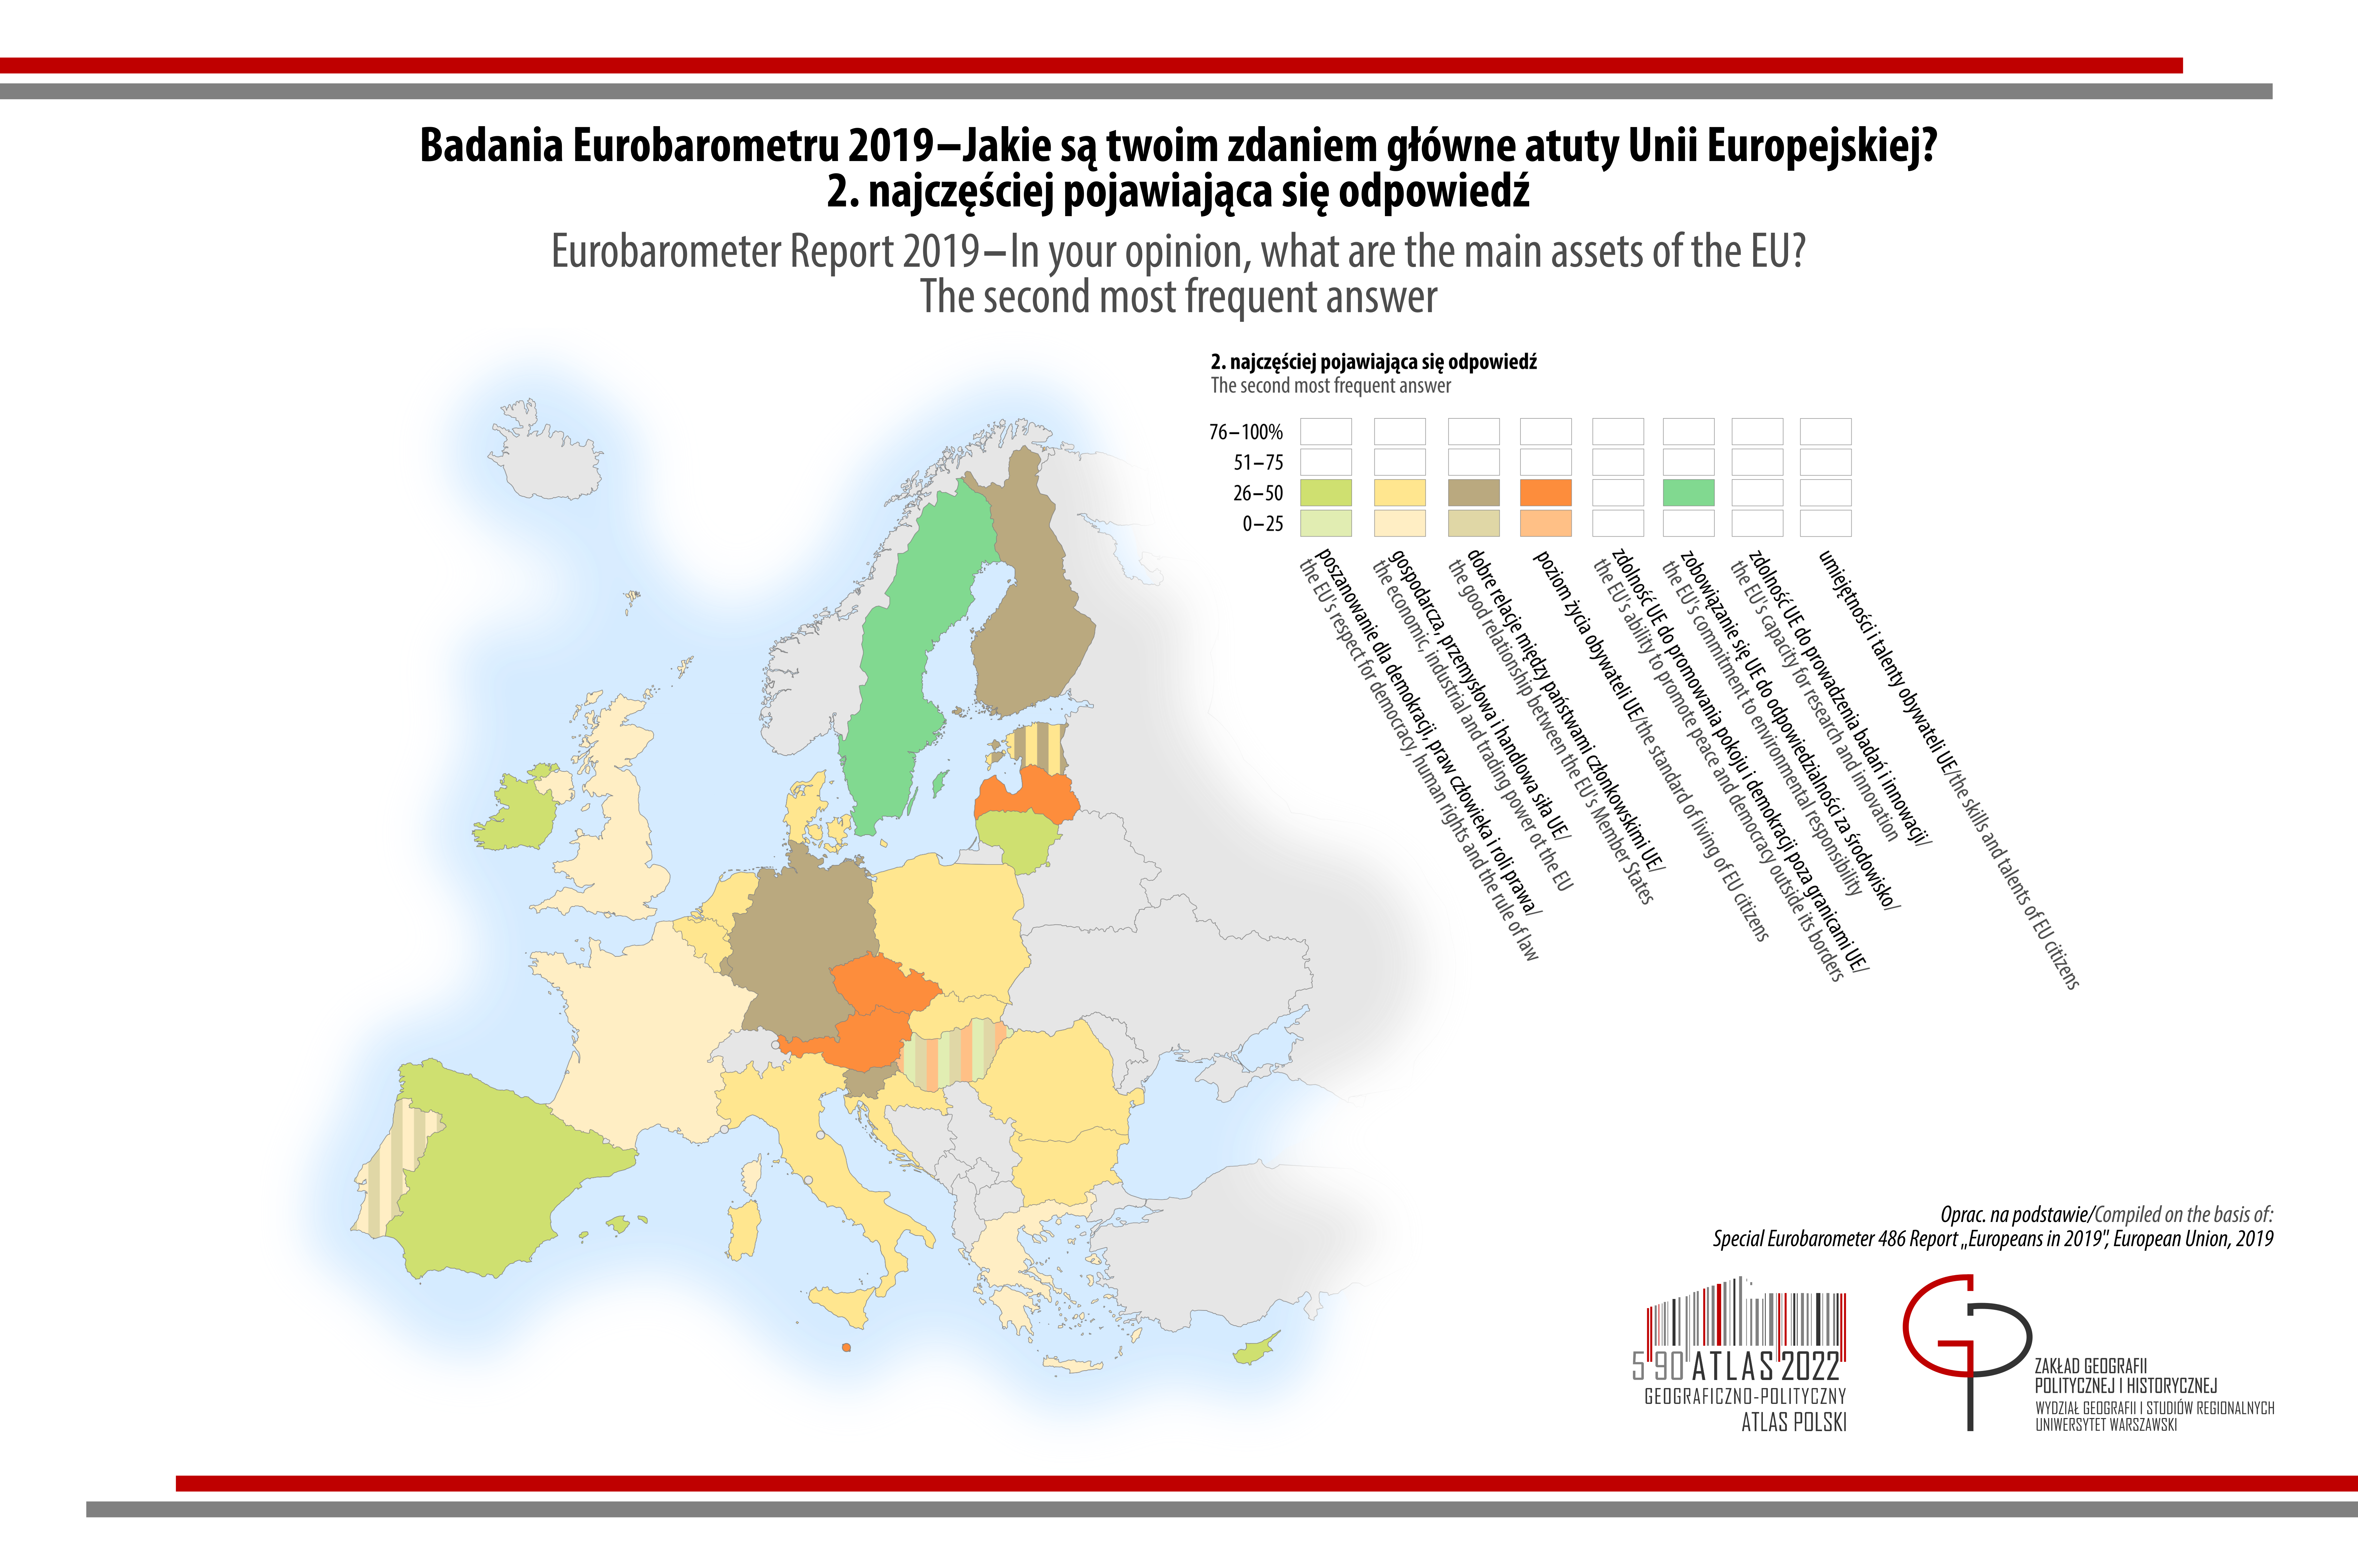 MAPA TYGODNIA: Eurobarometr- Jakie są Twoim zdaniem główne atuty Unii Europejskiej? Druga najczęściej pojawiająca się odpowiedź.